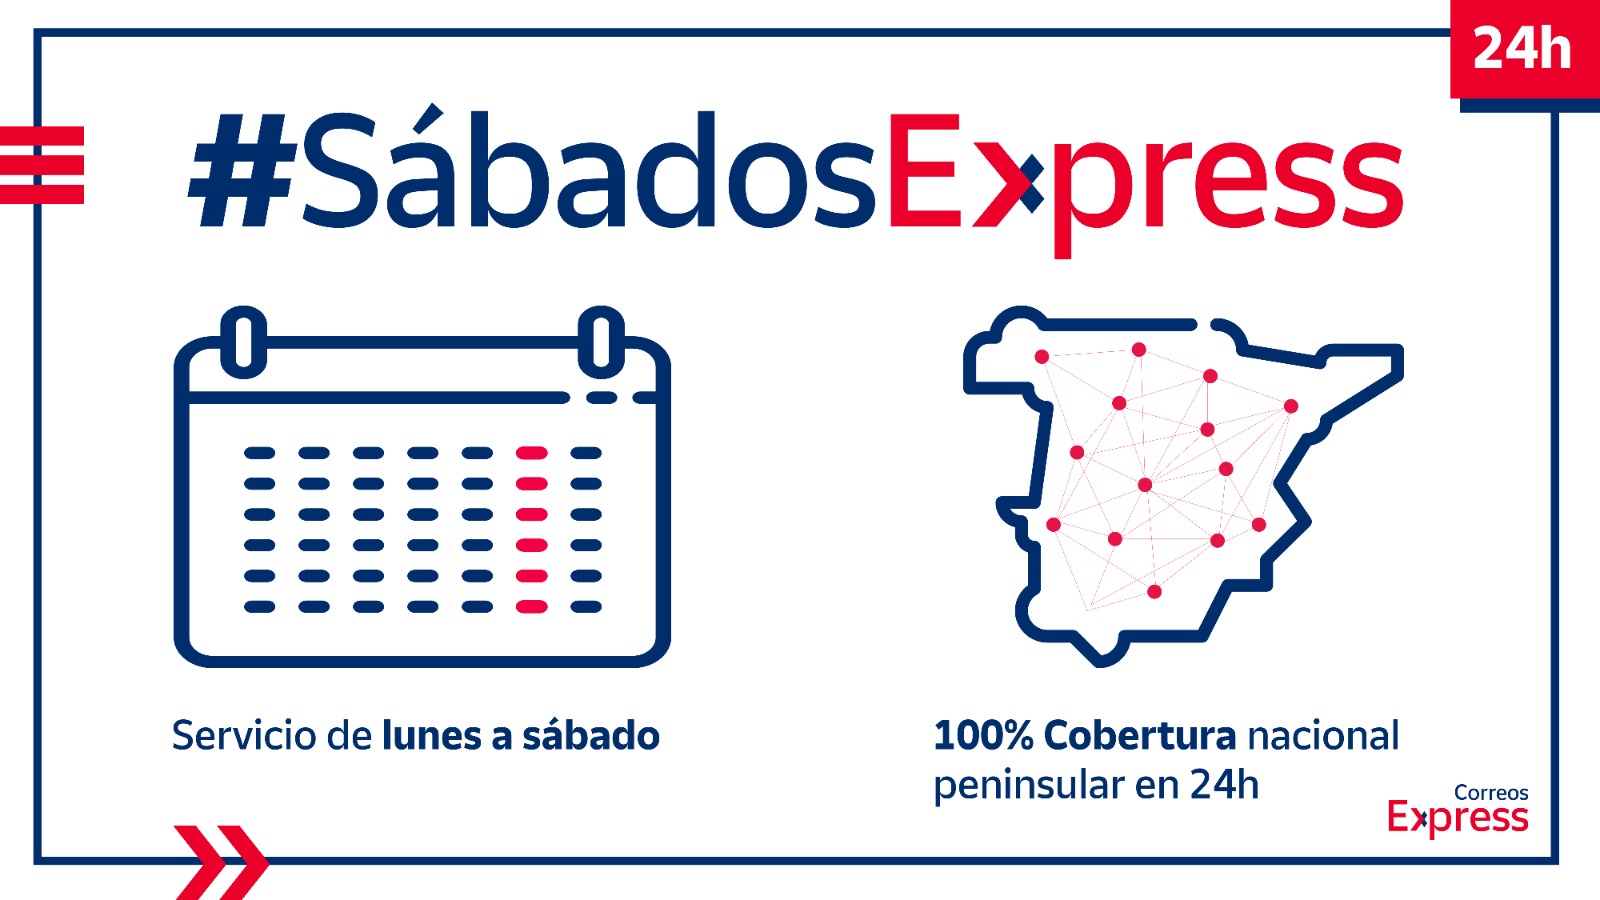 Correos Express amplía hasta los sábados su servicio de entrega en 24 horas a todo el territorio peninsular nacional